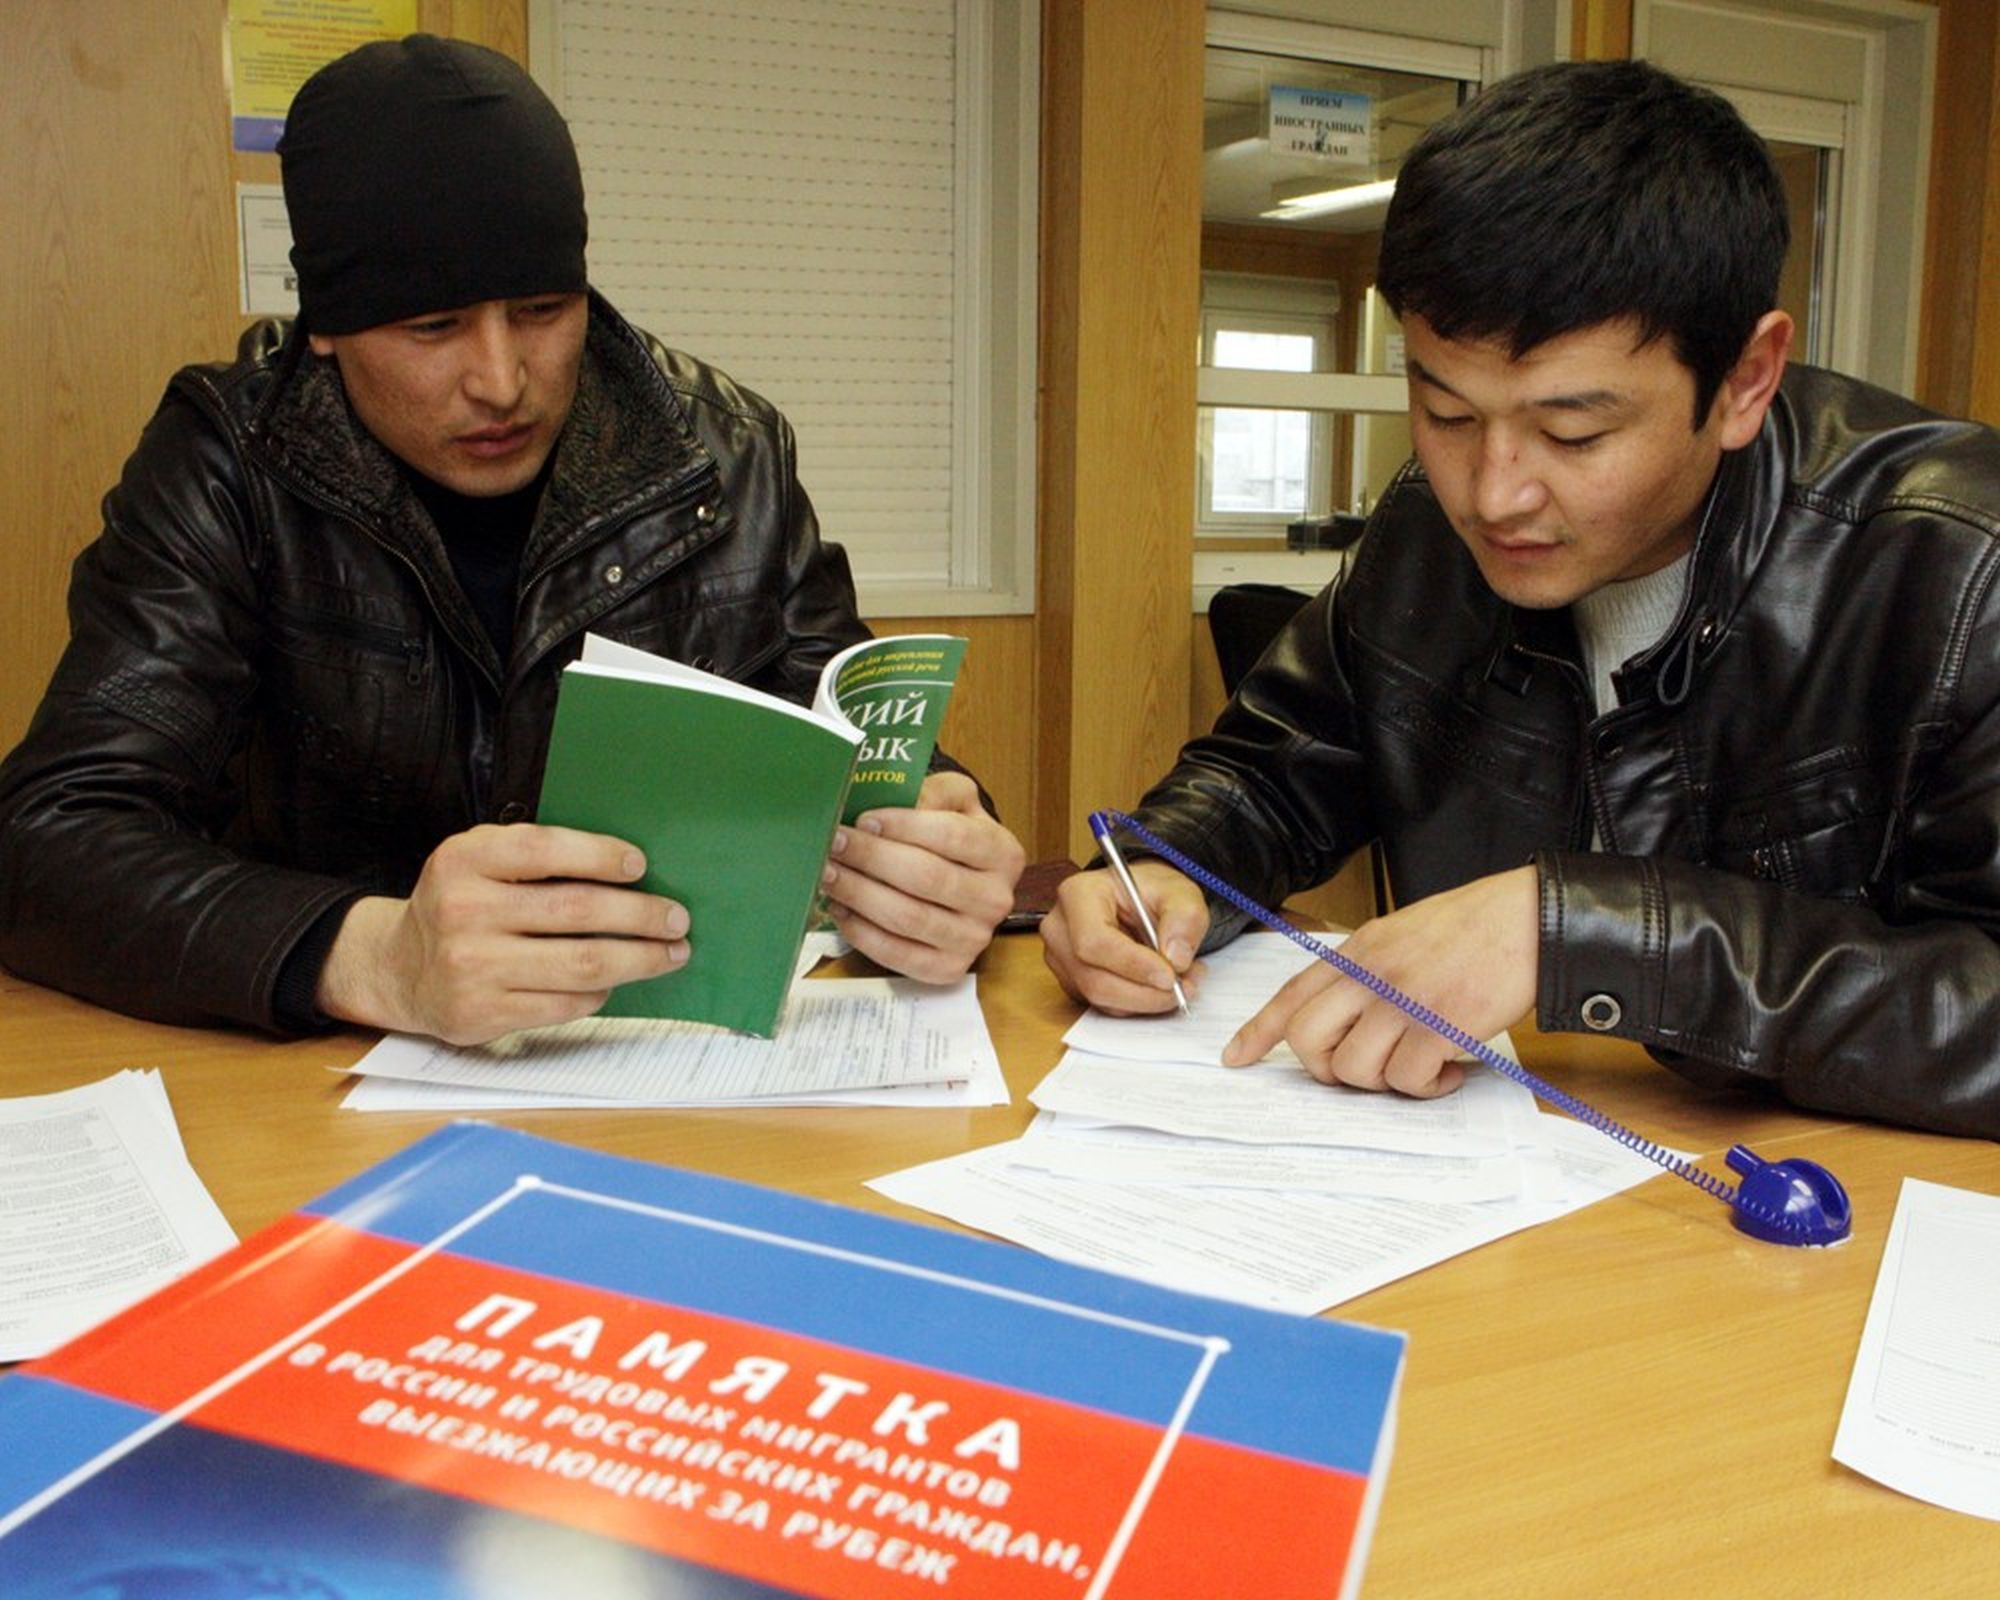 Разрешение на работу для граждан СНГ, как сделать разрешение на работу в РФ (Москва) для иностранца, какие документы собрать